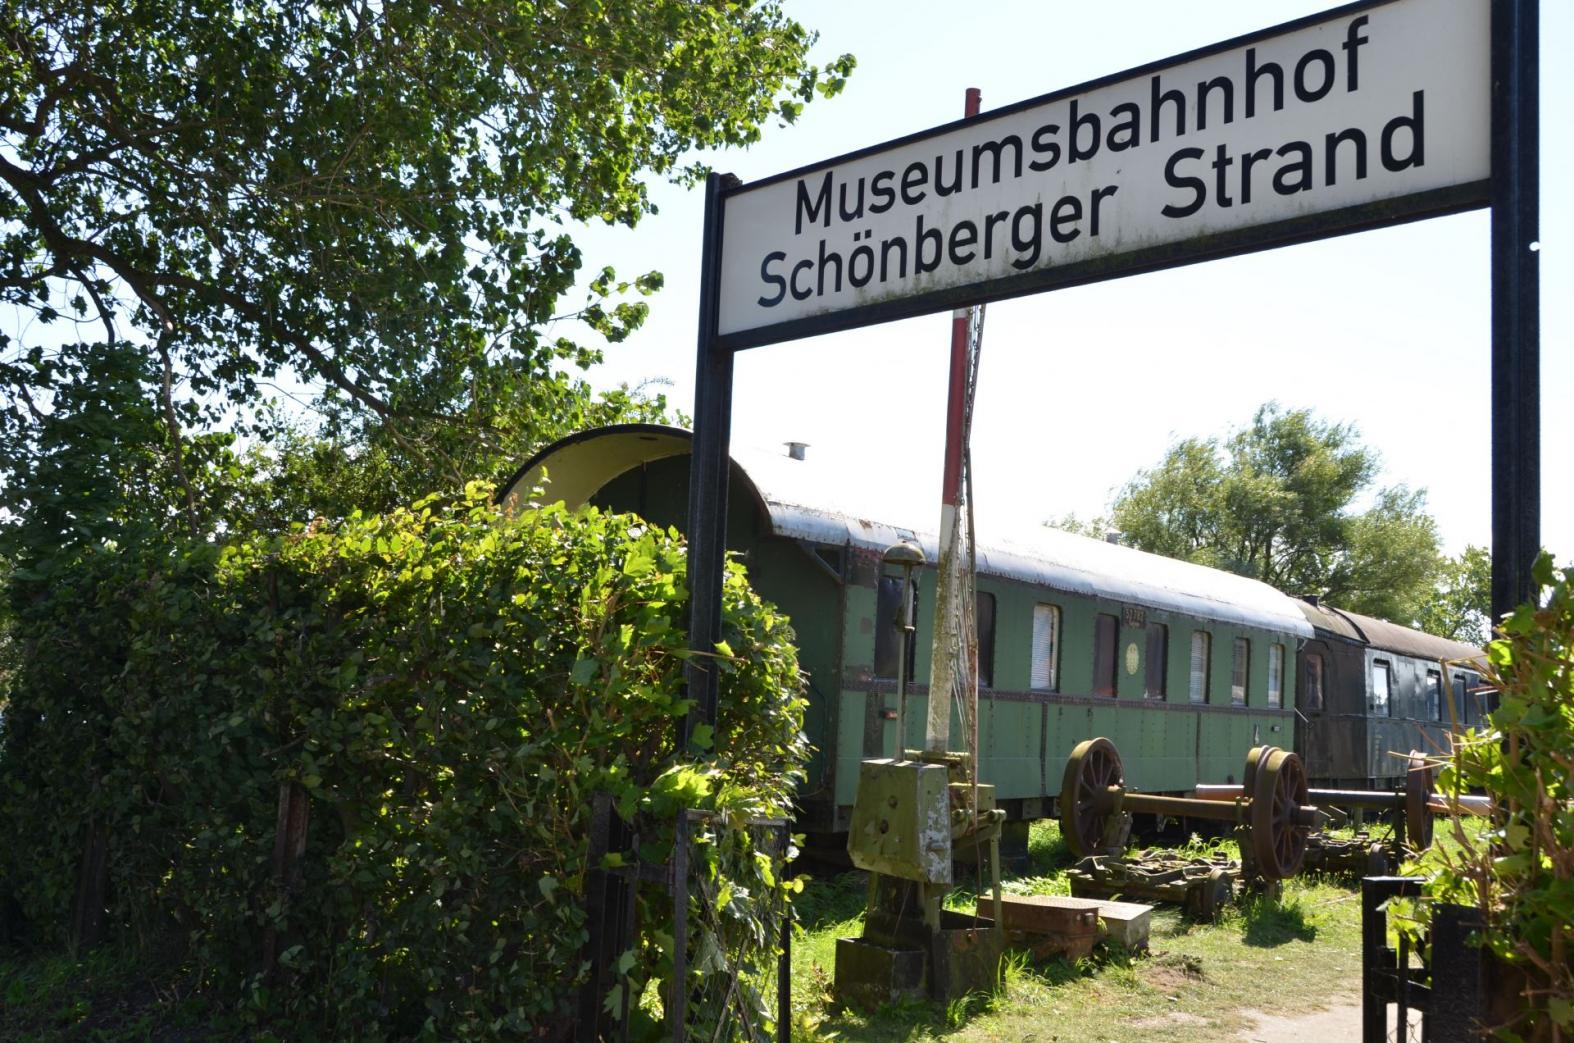 Schönberger Strand Museumsbahn 